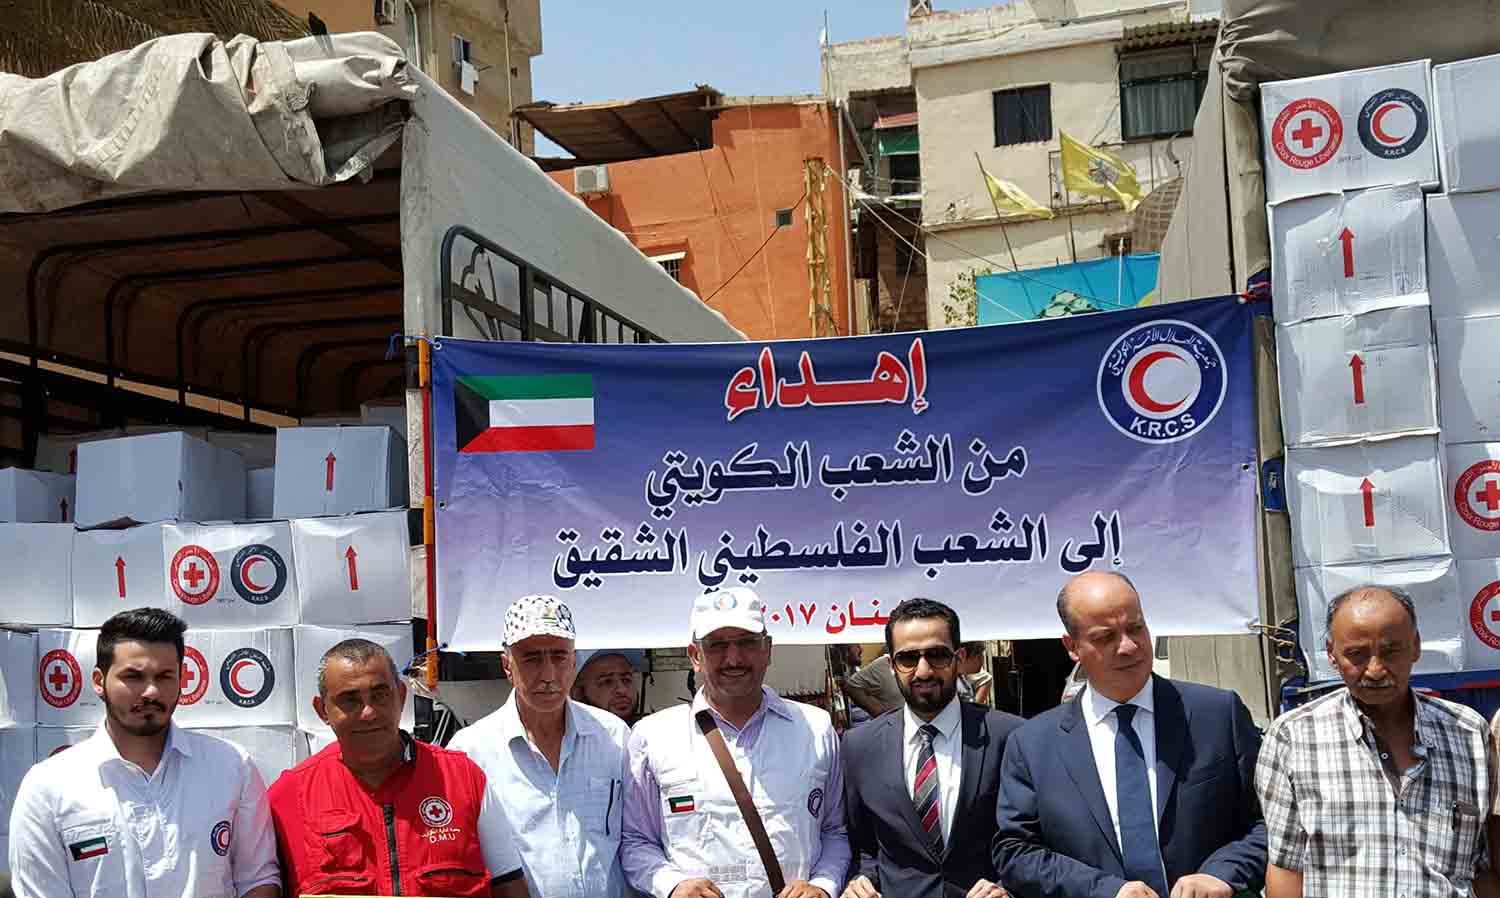 مساعدات غذائية من الشعب الكويتي إلى المخيّمات الفلسطينية في لبنان